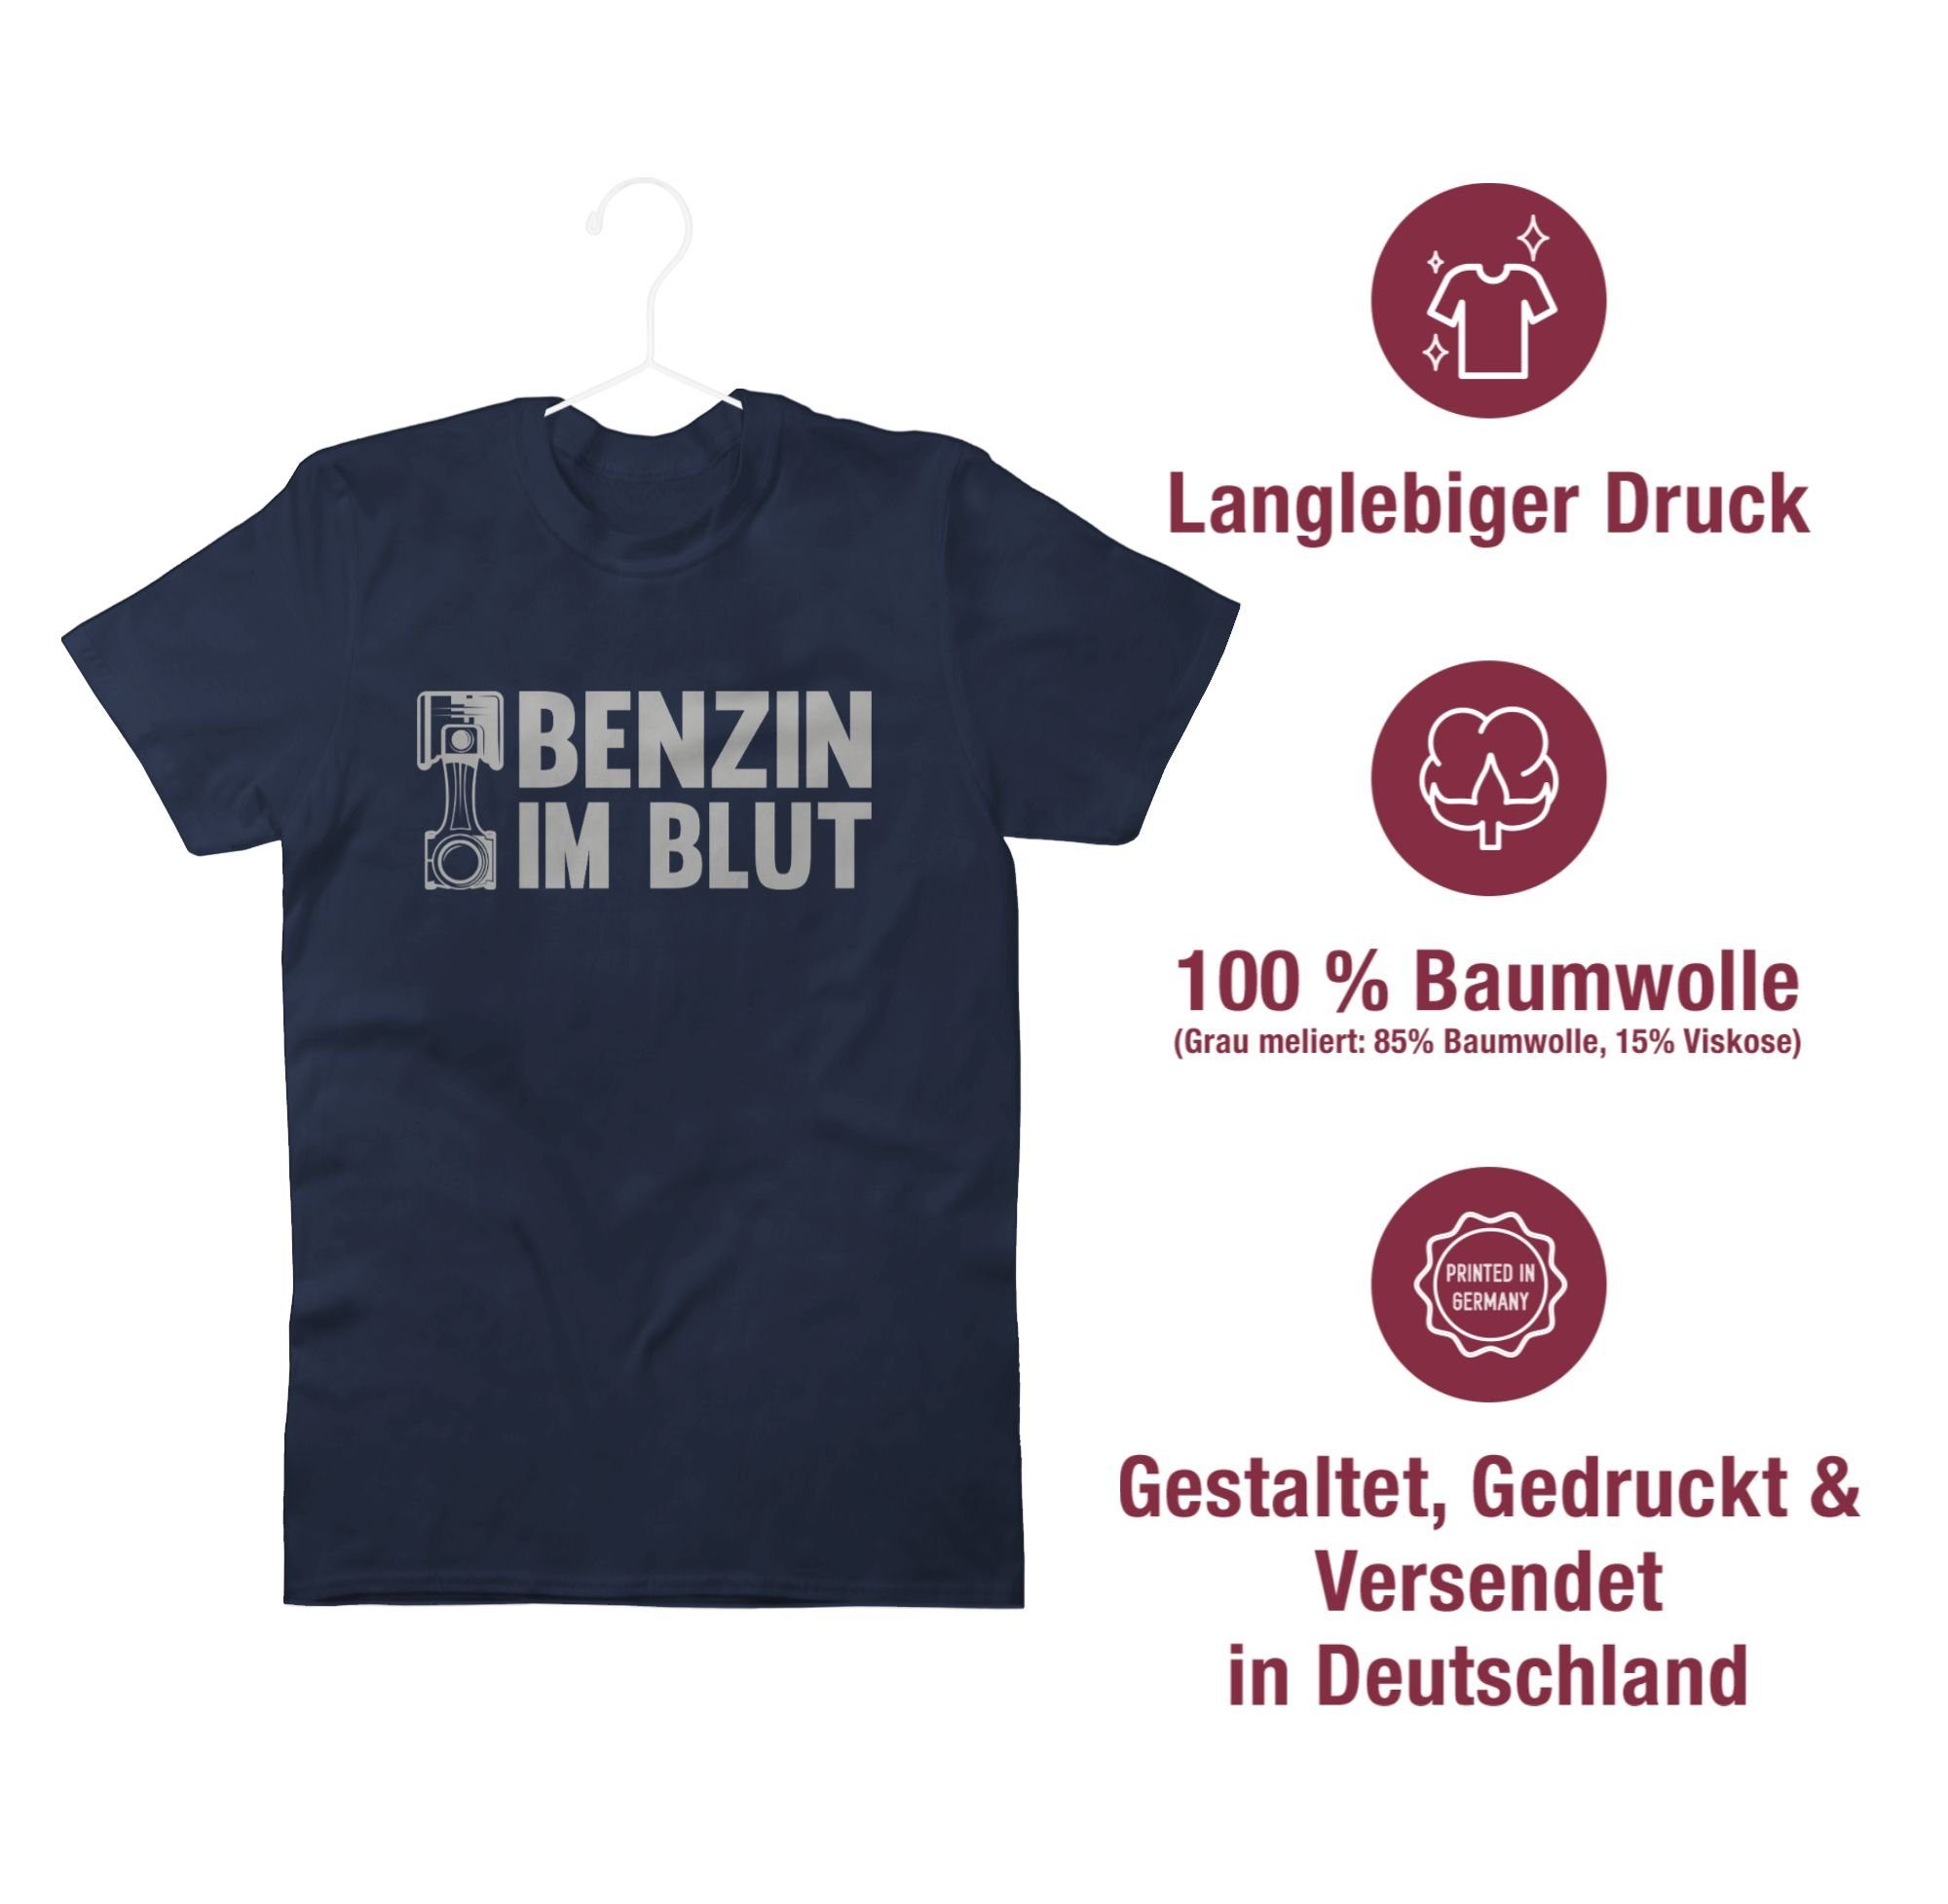 01 T-Shirt Benzin Auto - Navy Blut Blau Shirtracer im Zylinder